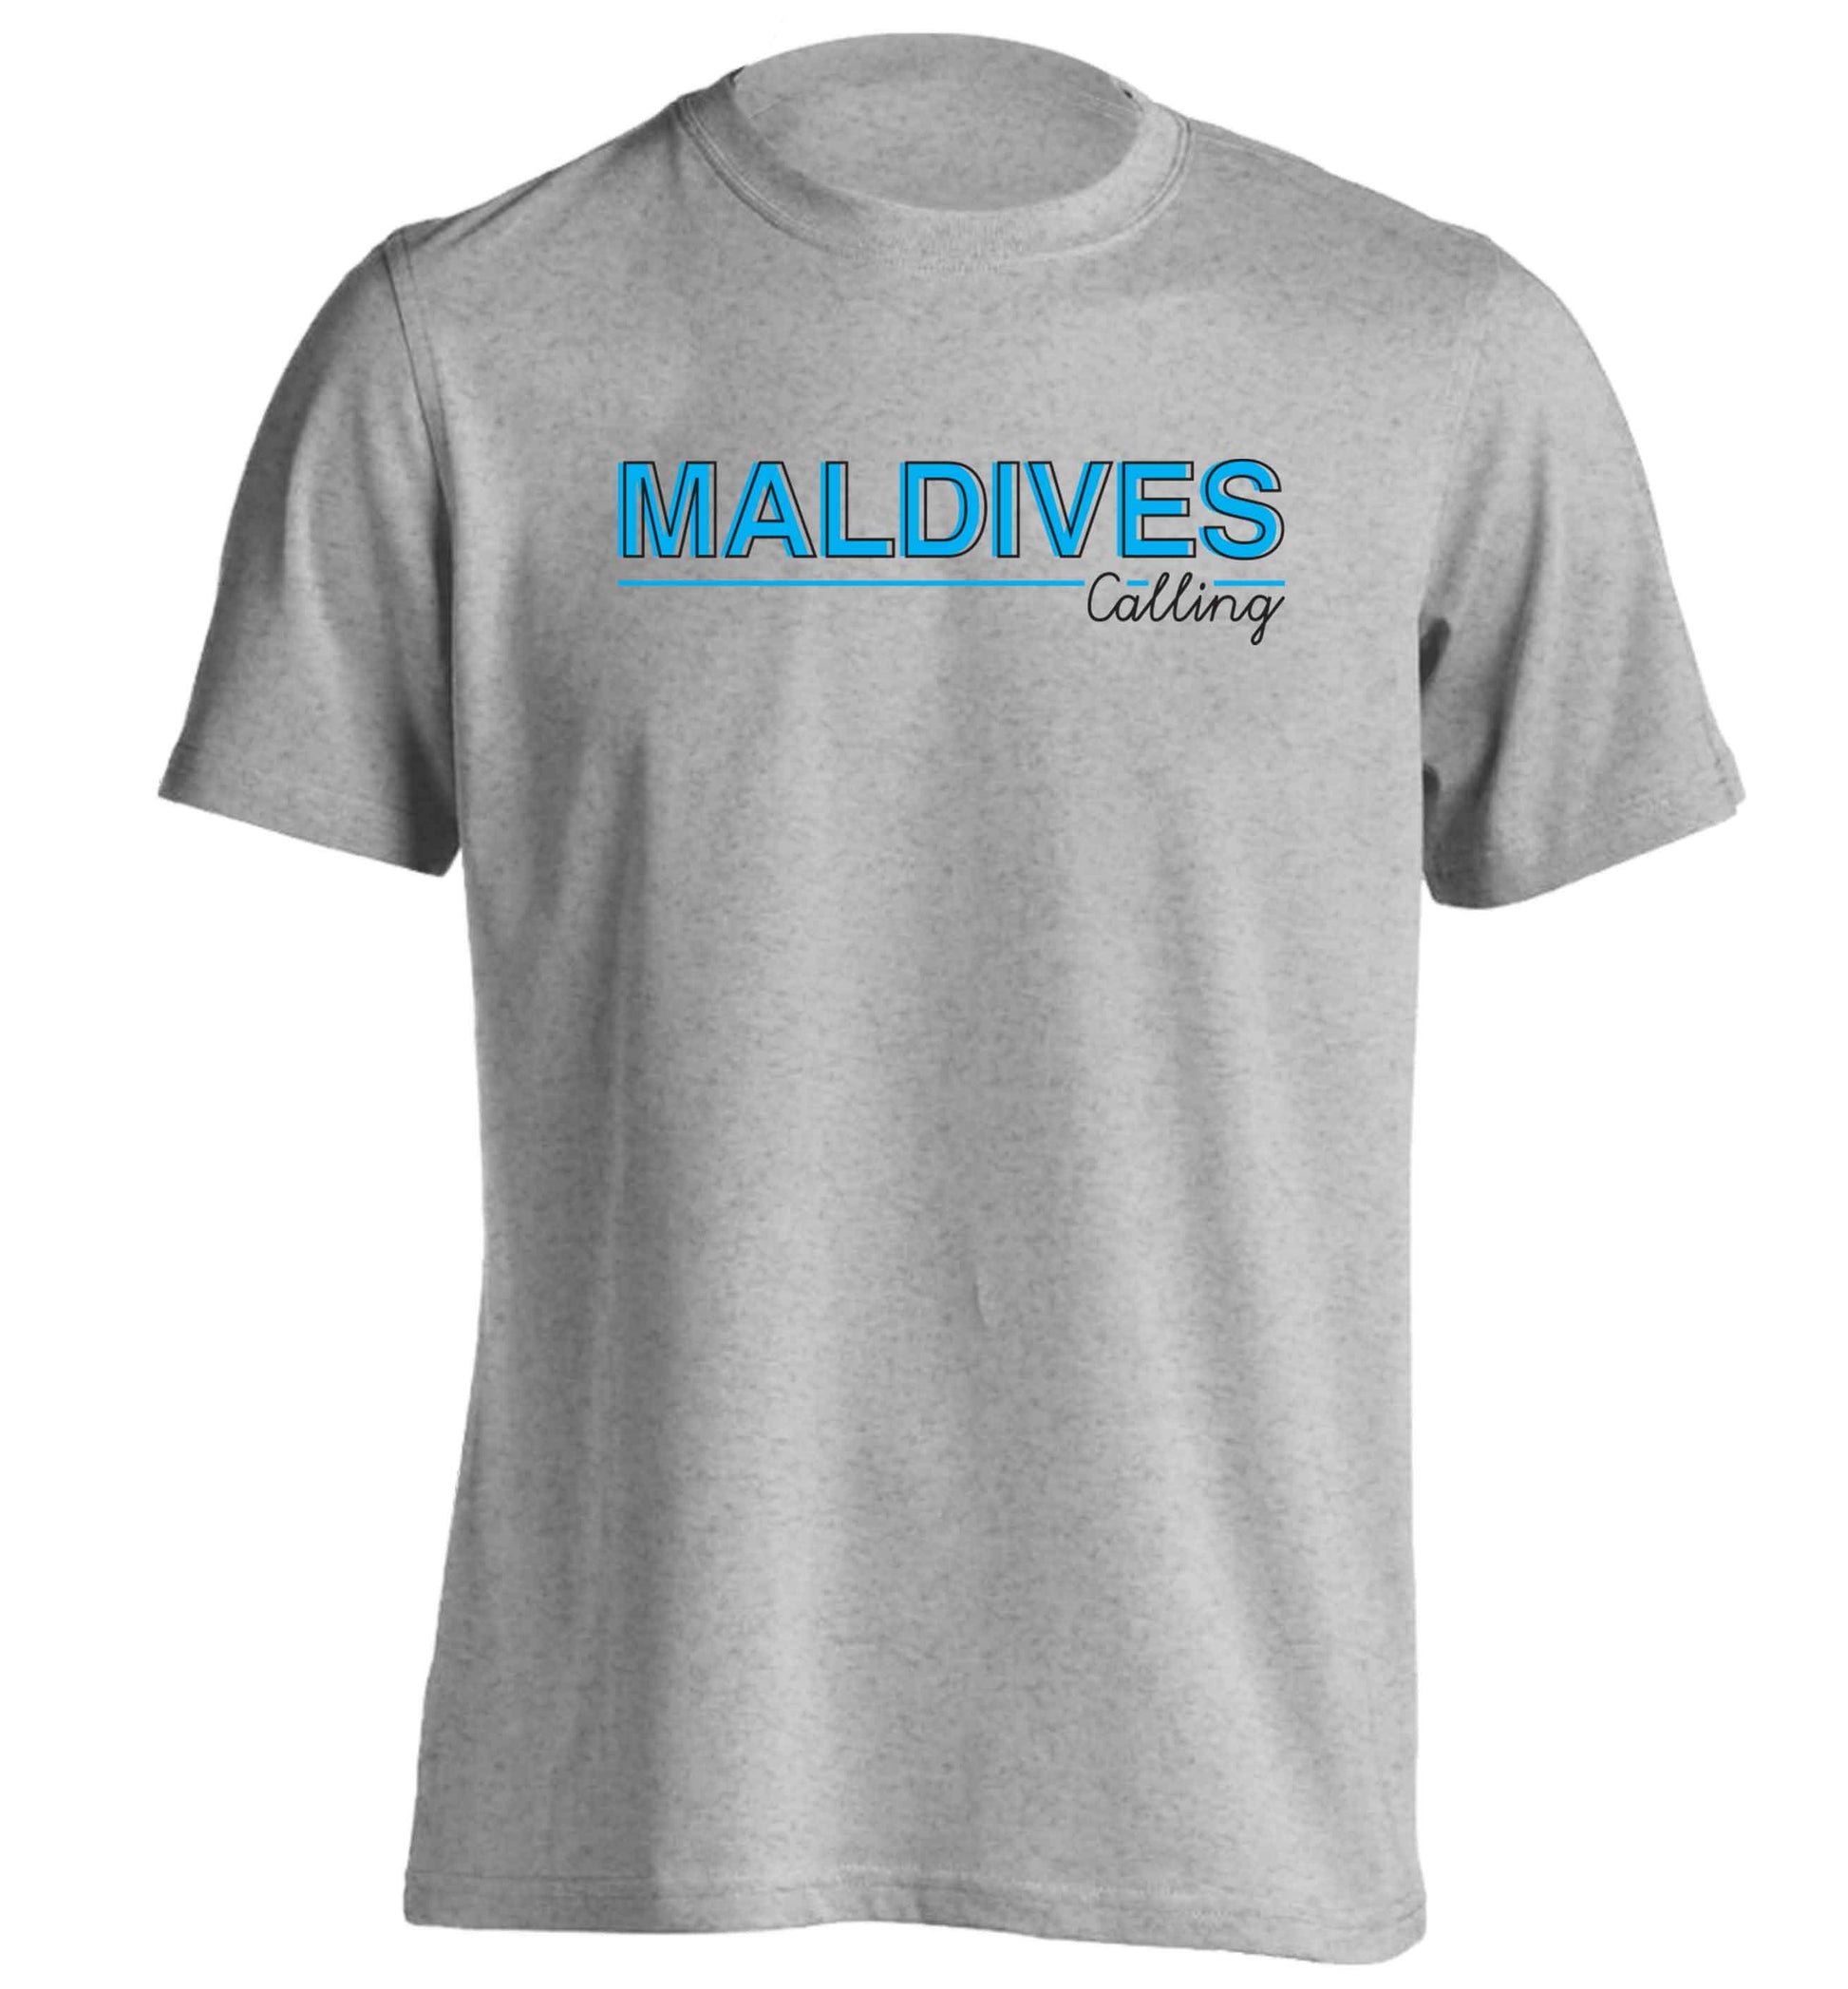 Maldives calling adults unisex grey Tshirt 2XL